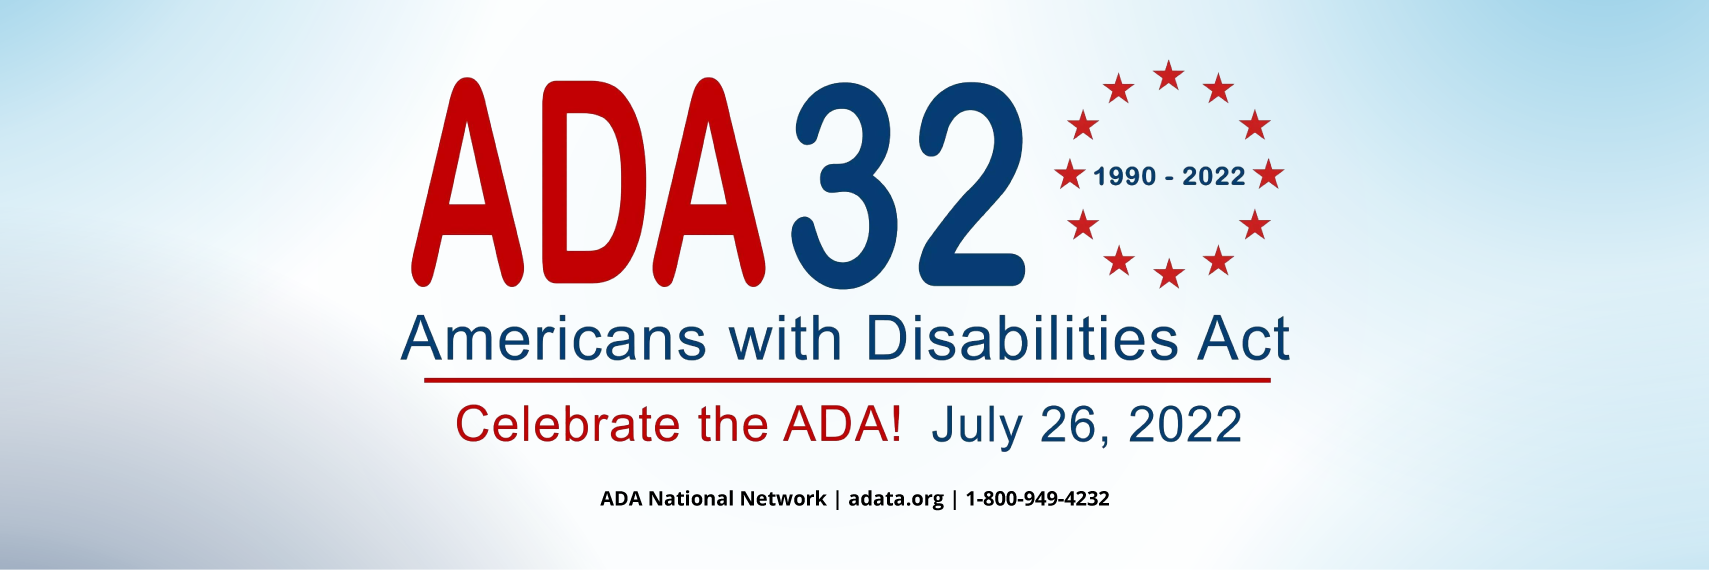 ADA 32nd Anniversary